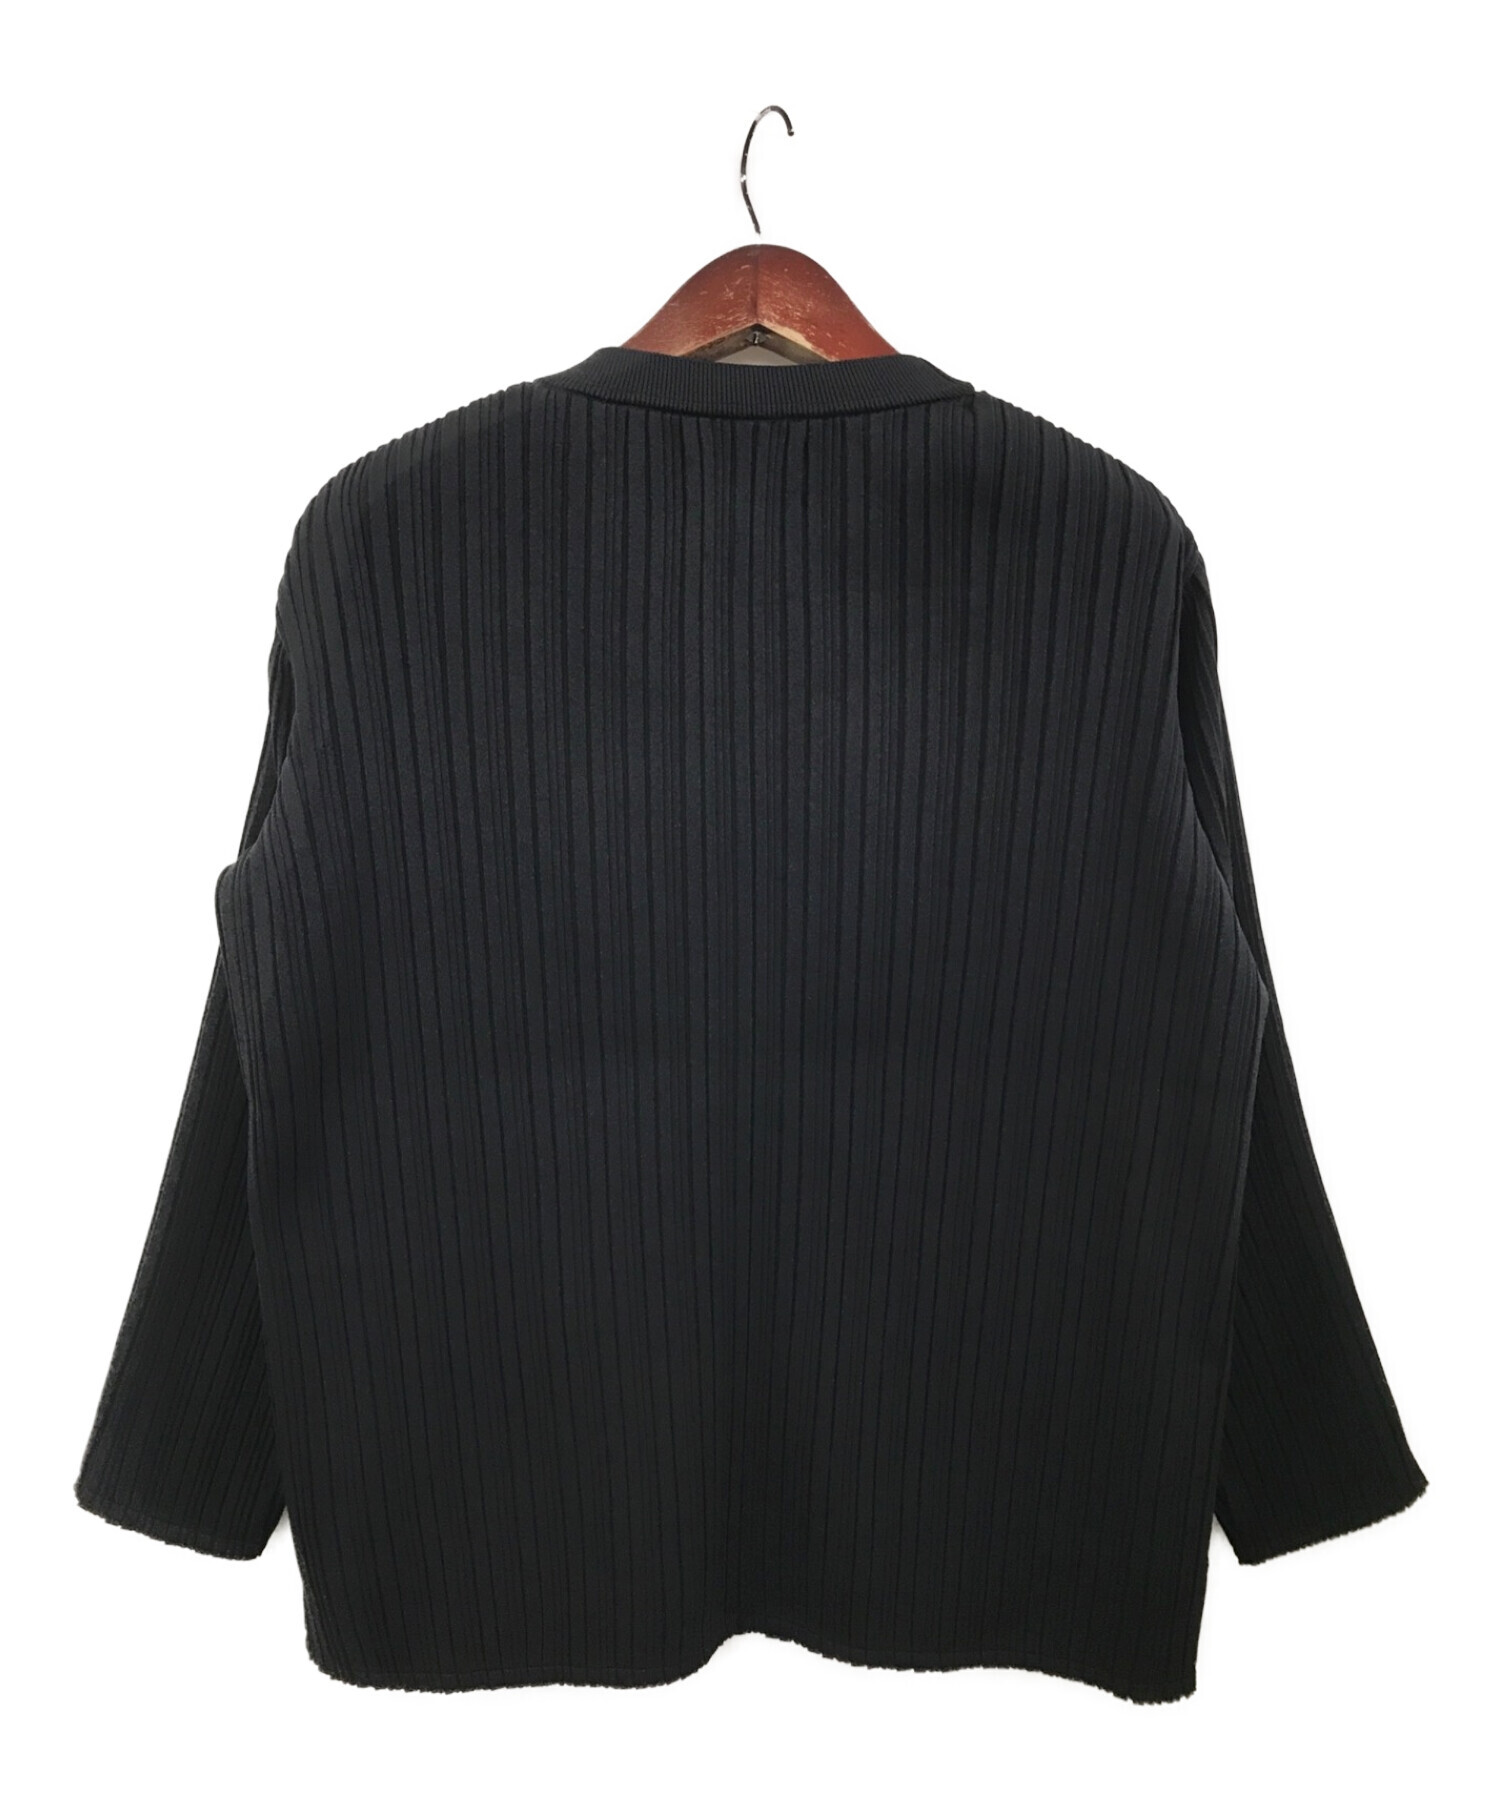 YOKE (ヨーク) Pleated Knit Cardigan ブラック サイズ:2